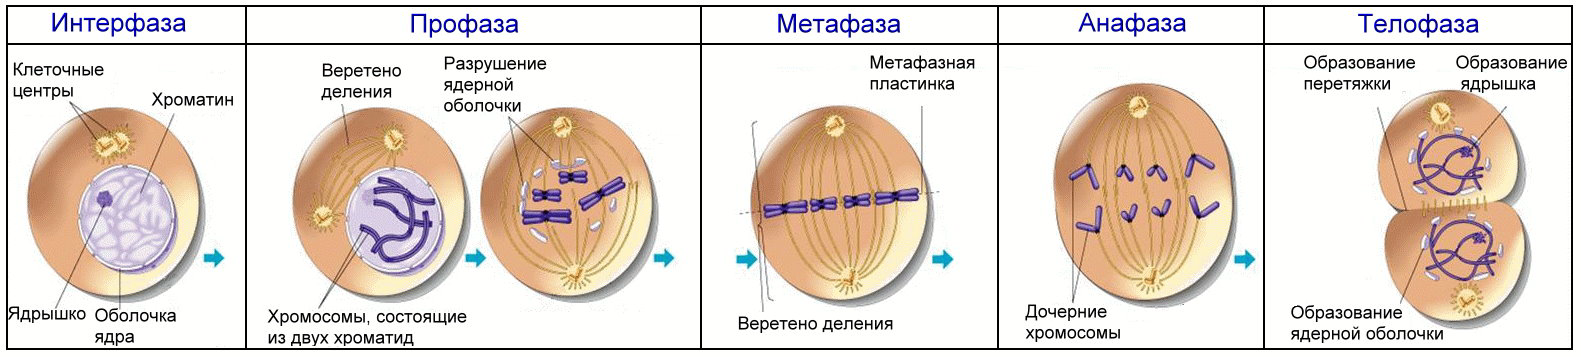 Клетки б укорачивание. Формирование веретена деления митоз. Фазы клеточного цикла митоза. Фаза деления клетки 4n4c.